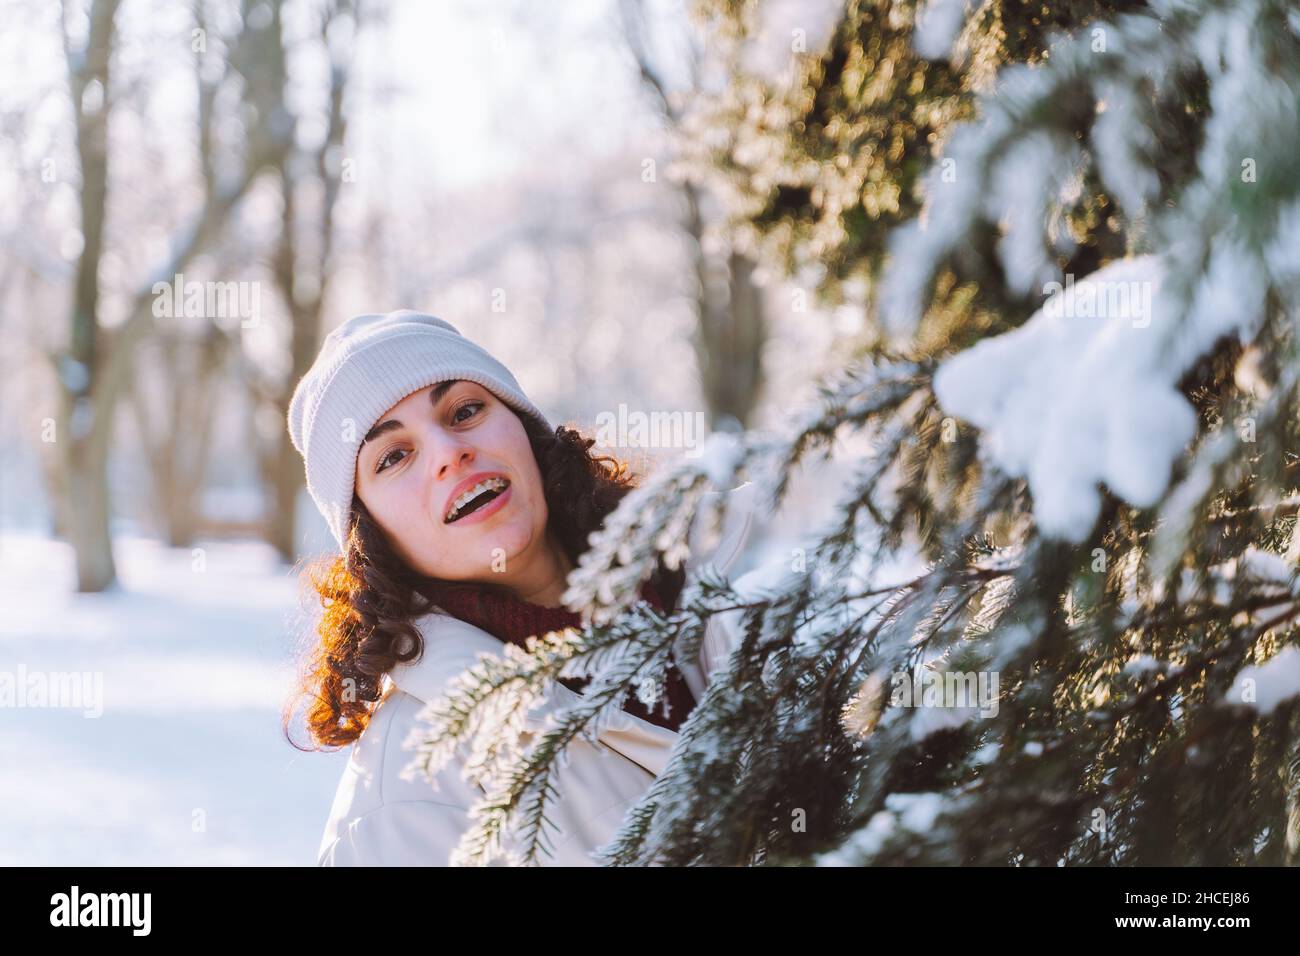 Une jeune femme souriante et carie se promet se cache derrière un sapin de Noël recouvert de neige.Émotions positives, fraîcheur, vacances. Banque D'Images